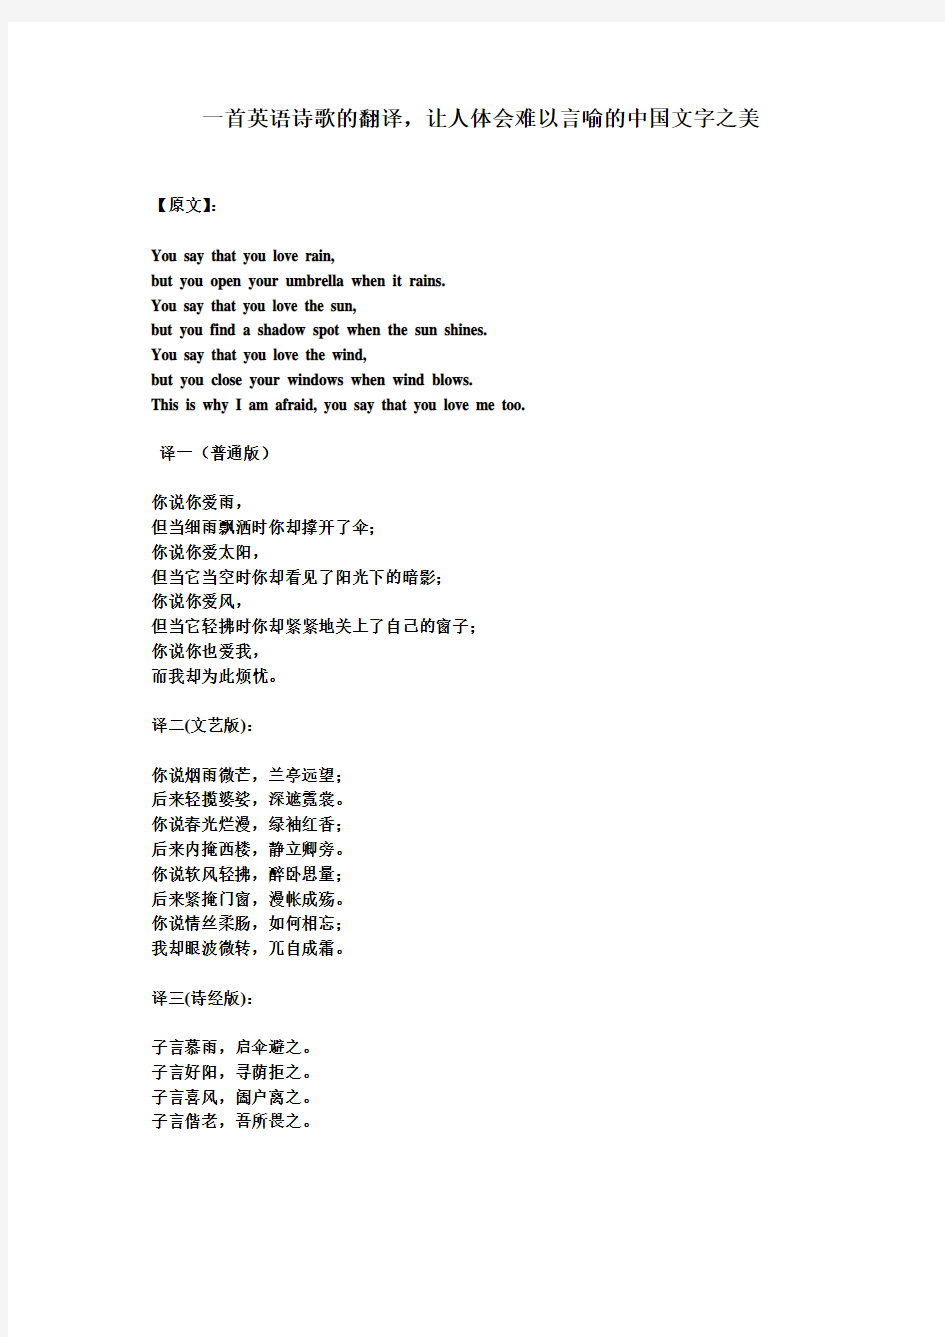 一首英语诗歌的翻译,让人体会难以言喻的中国文字之美